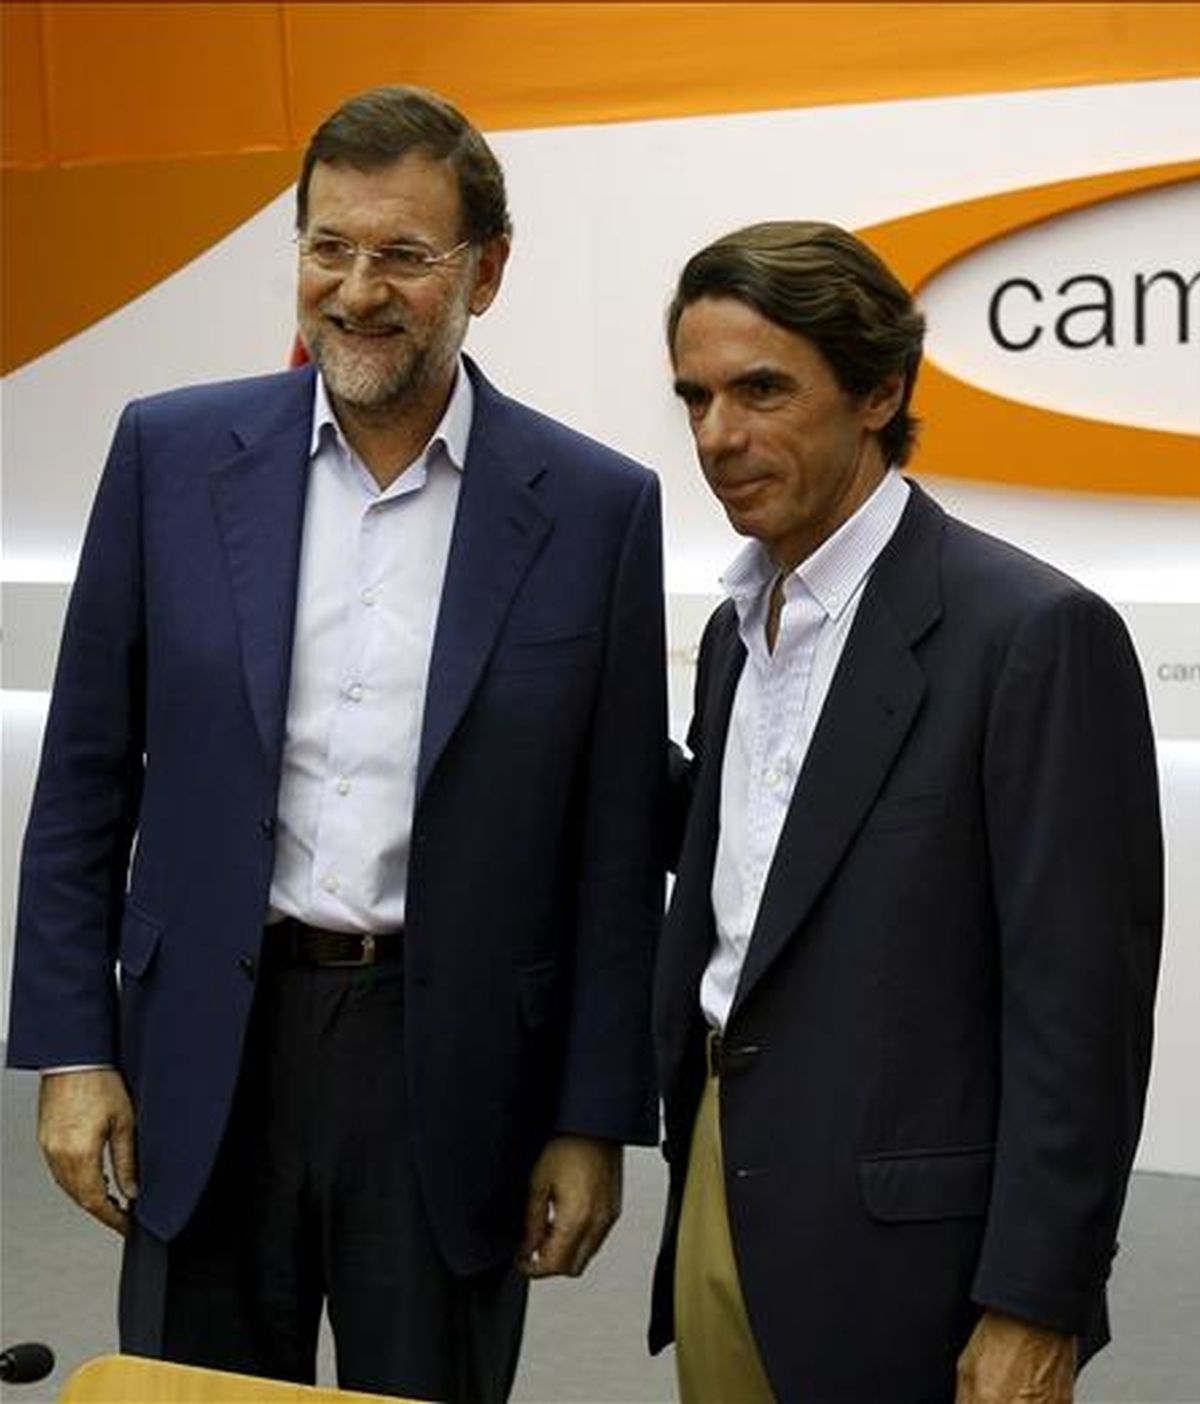 El presidente del Partido Popular, Mariano Rajoy (i), que intervino hoy en la clausura del campus de verano FAES, que tiene lugar en Navacerrada (Madrid), acompañado del ex presidente del Gobierno y el presidente de Honor del PP, José María Aznar. EFE